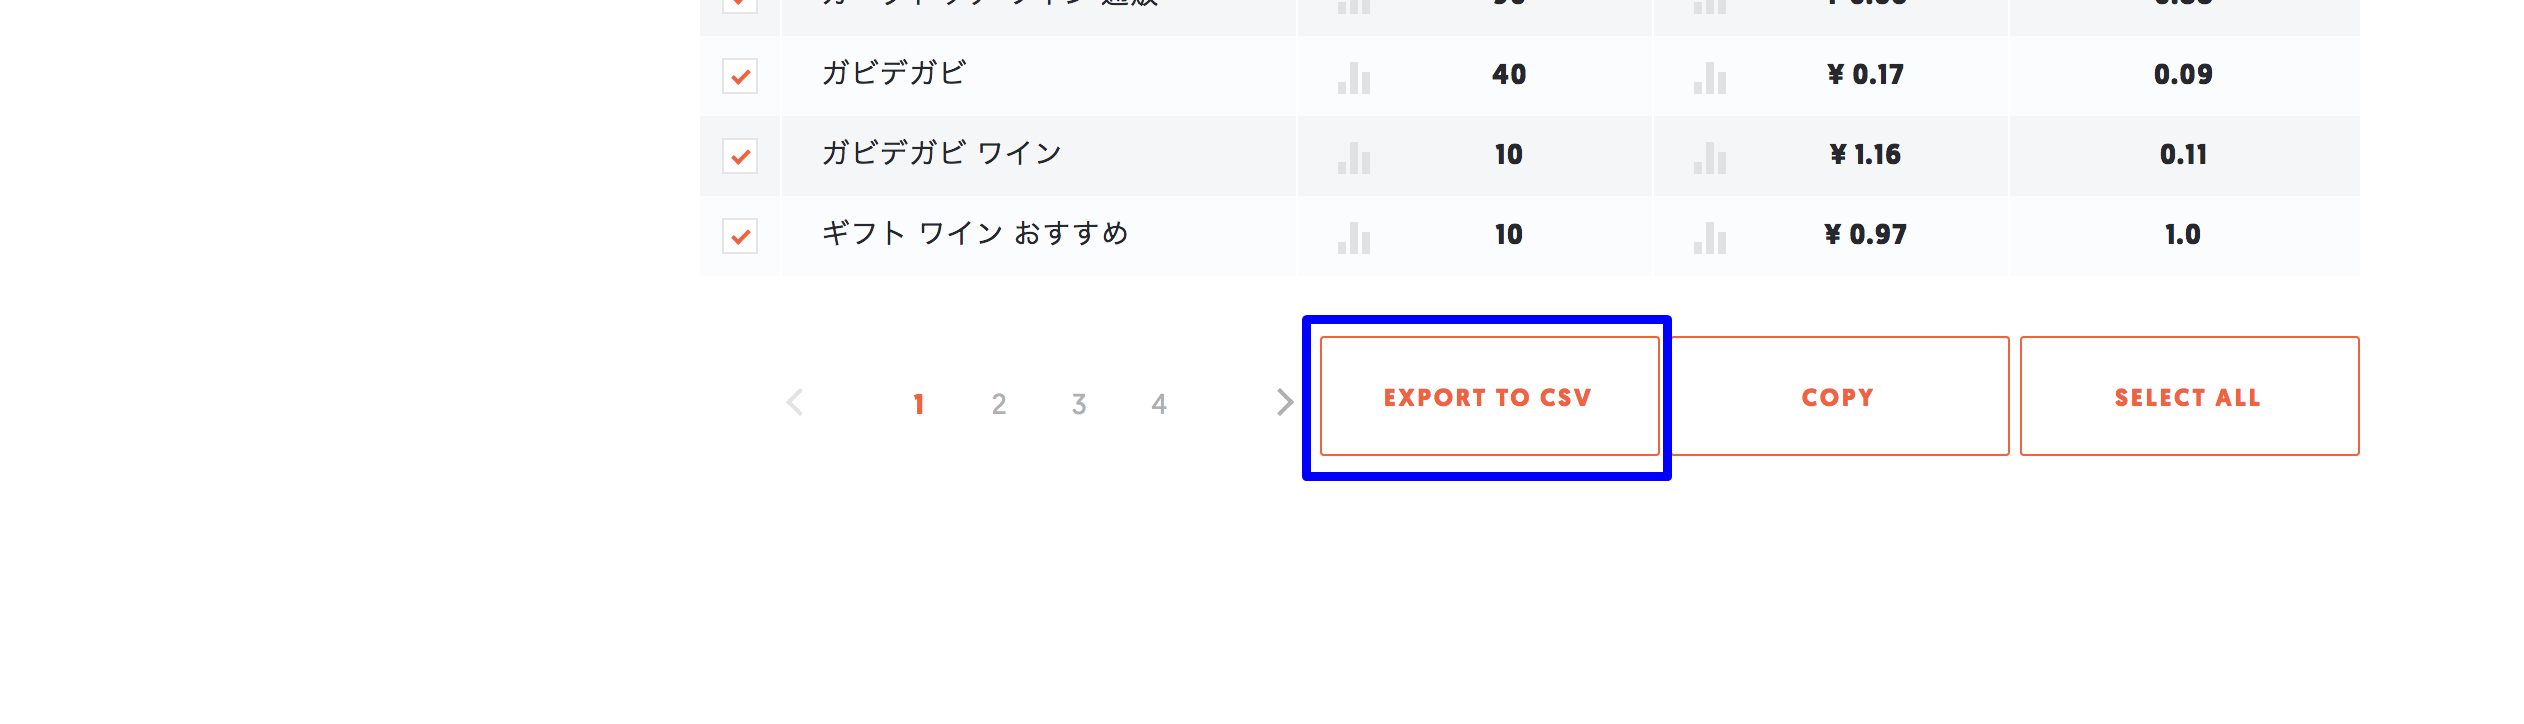 EXPOT TO CSV